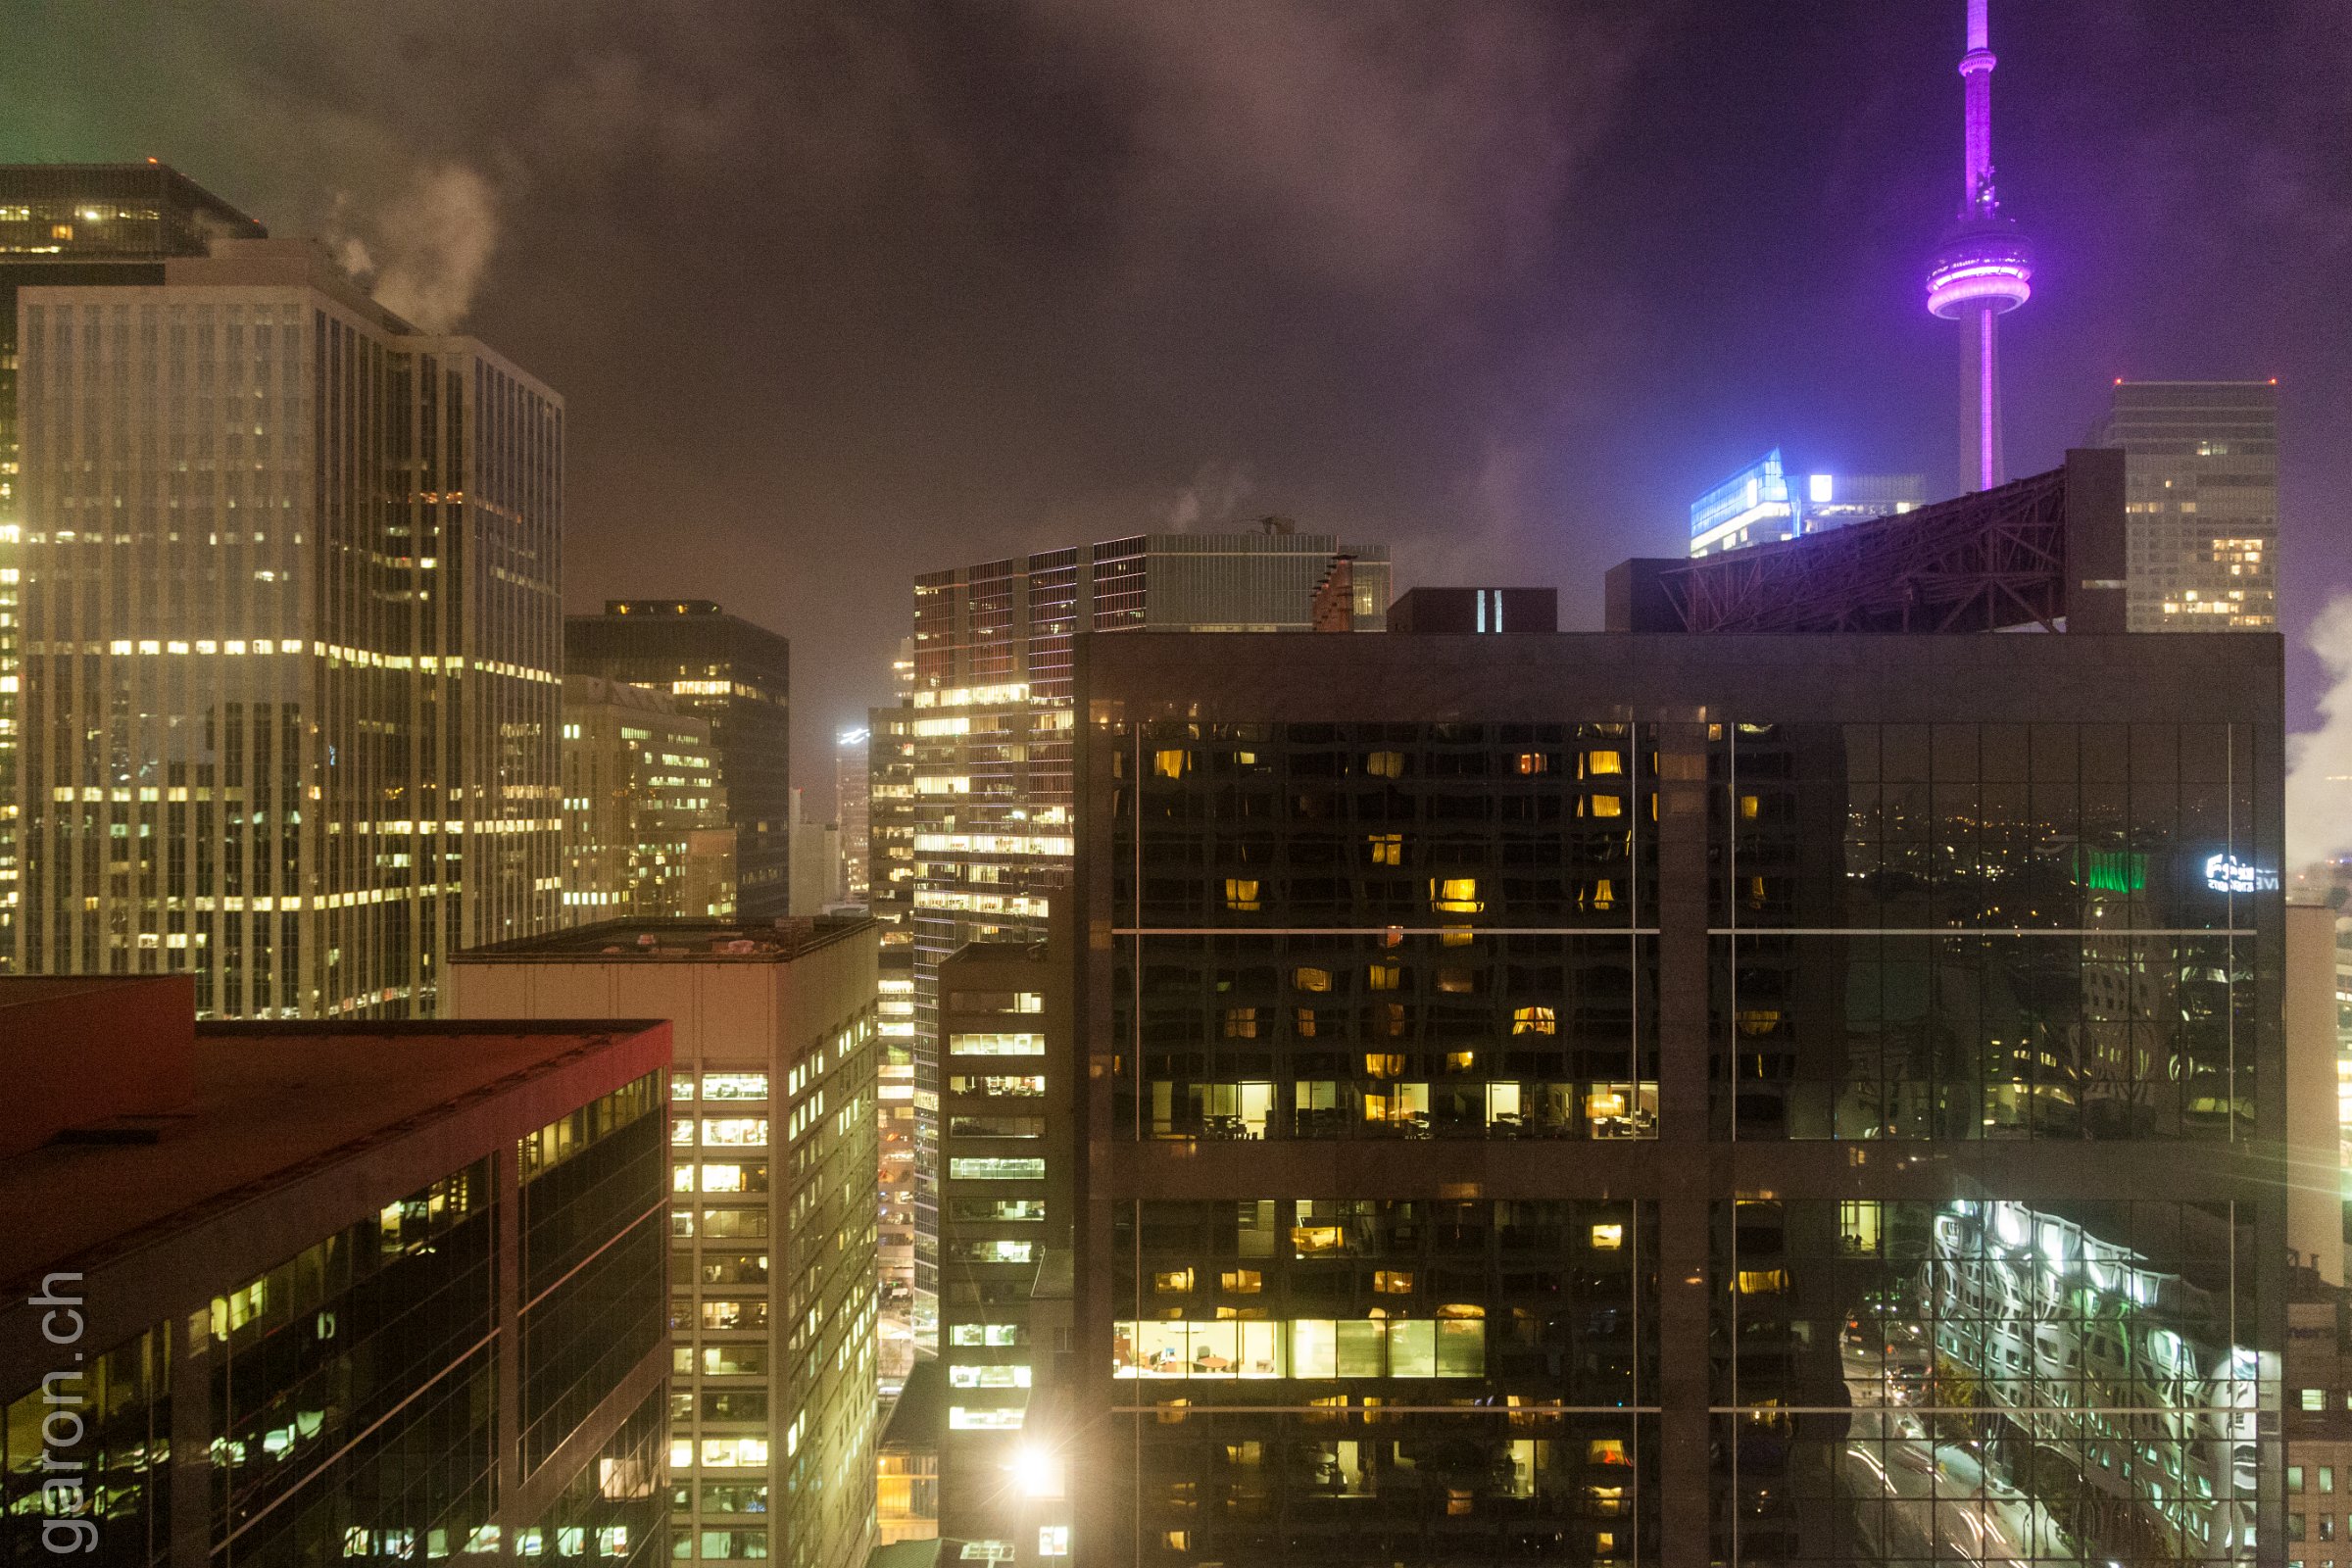 Ontario, Toronto Skylines Night view from the Hilton hotel